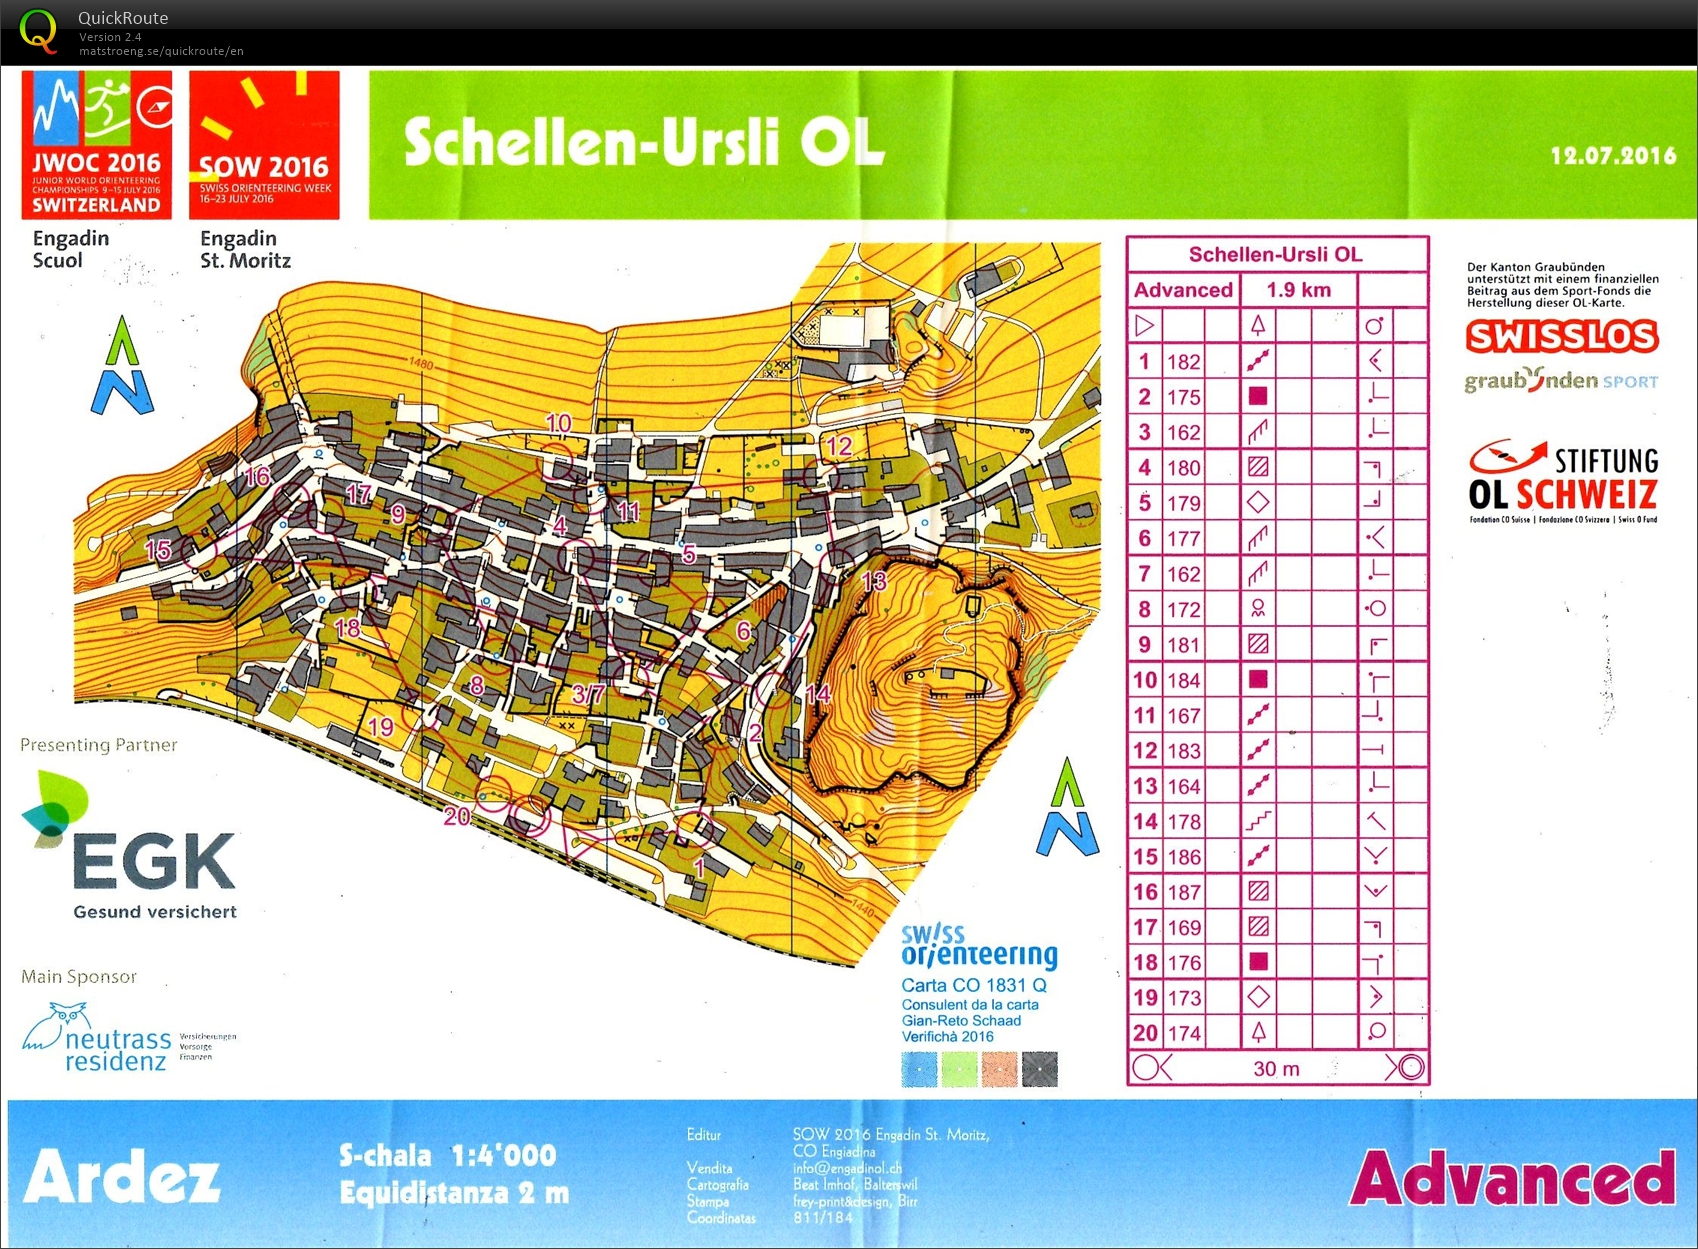 Schellen-Ursli OL (2016-07-12)